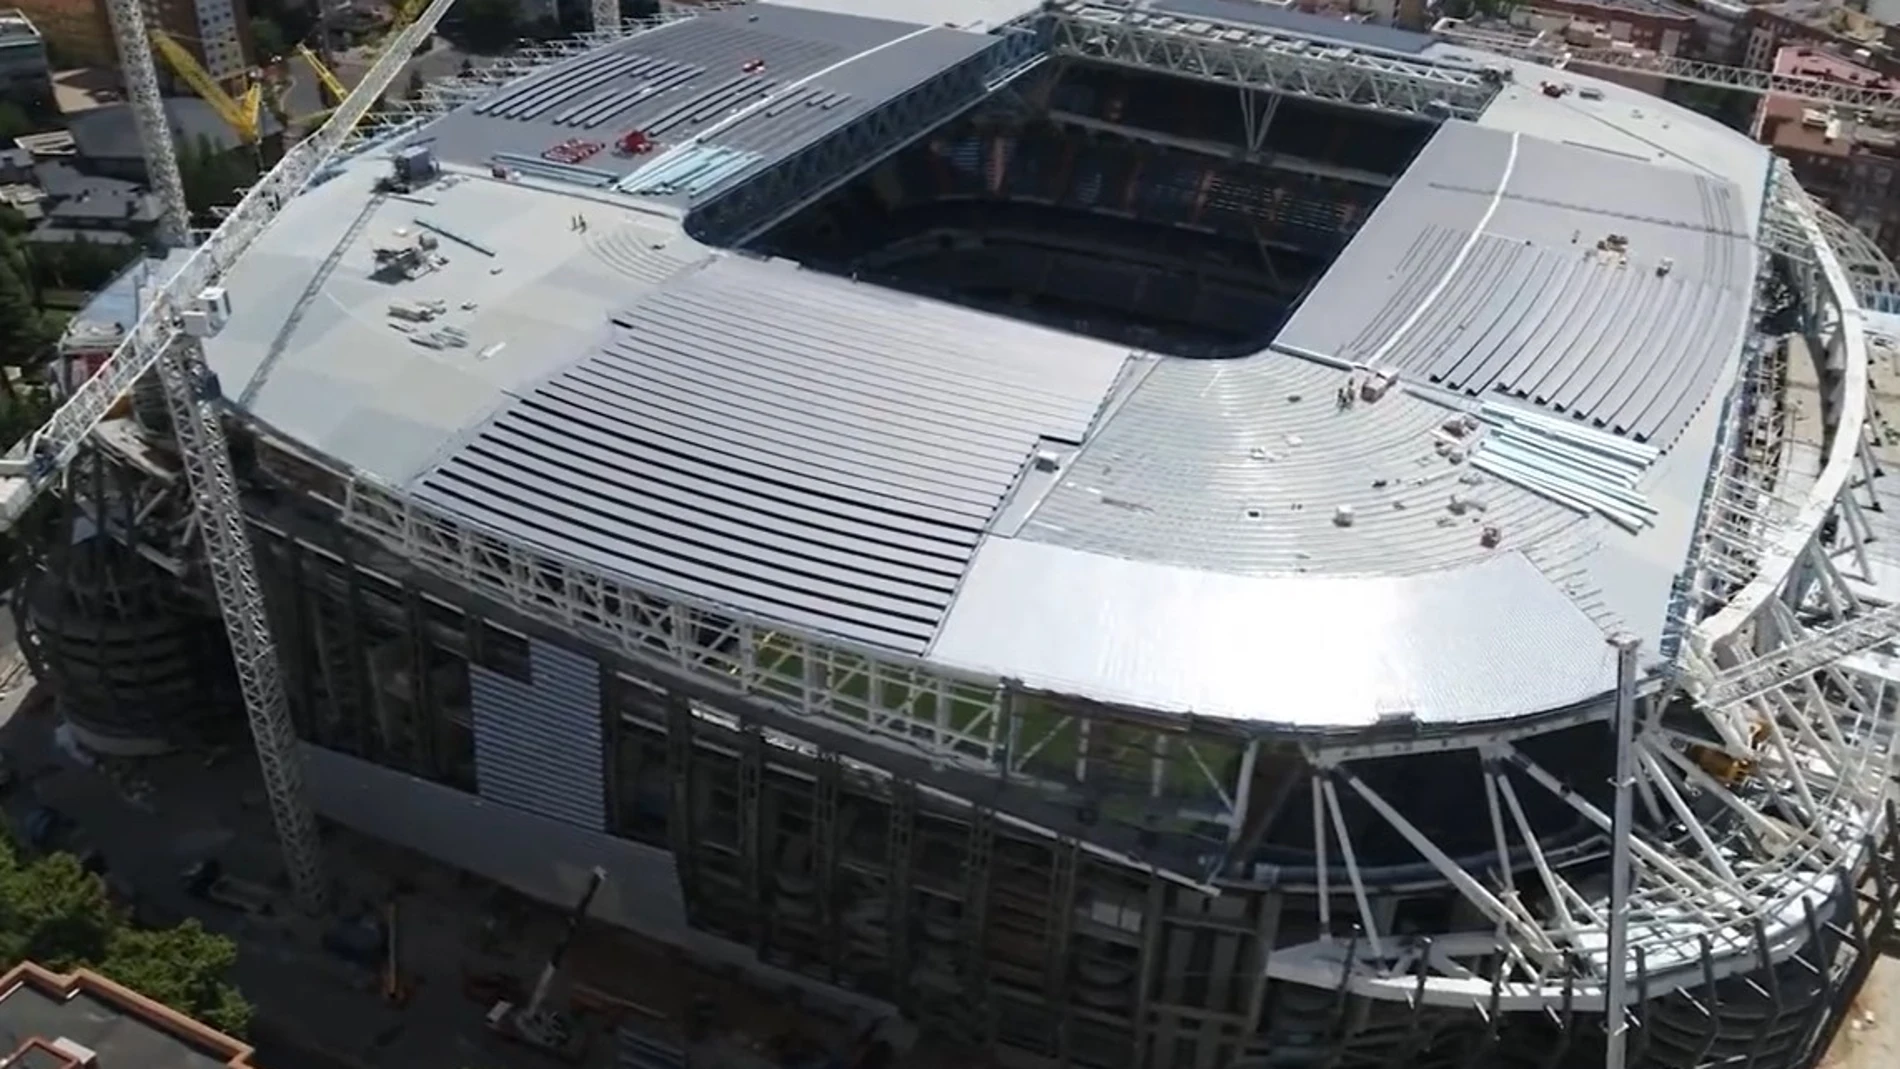 El nuevo estadio Santiago Bernabéu va tomando forma